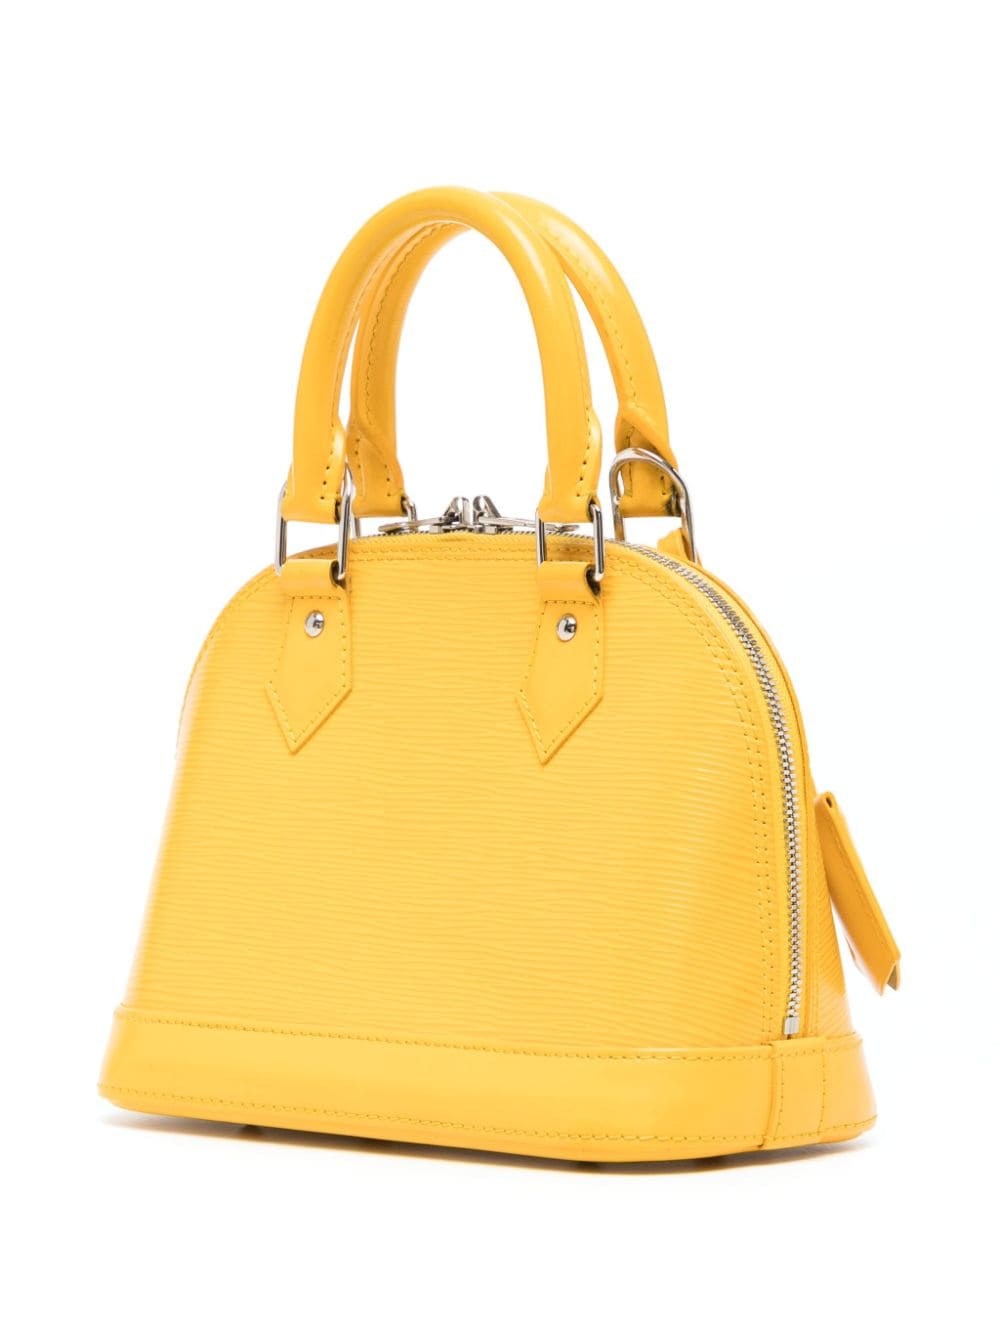 Louis Vuitton Pre-owned Alma Bb Handbag - Yellow